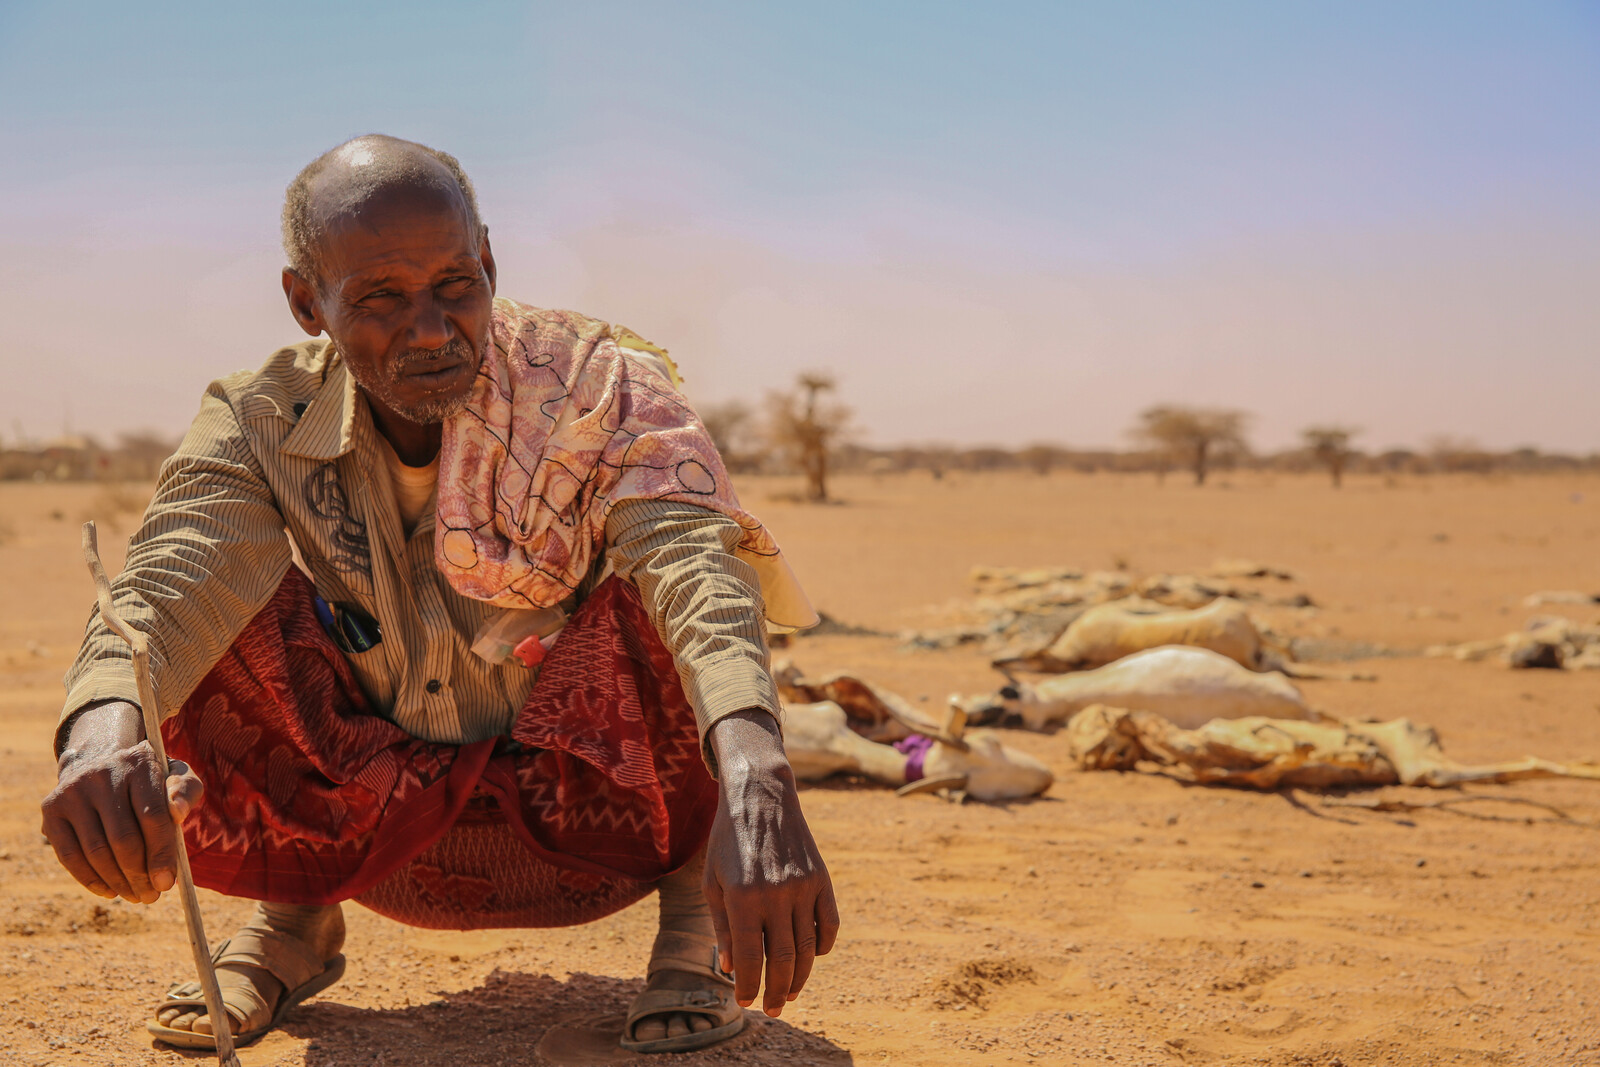 Mann sitzt während der Dürre in Ostafrika. Hinter ihm liegt totes Vieh, das die Dürre nicht überlebt hat